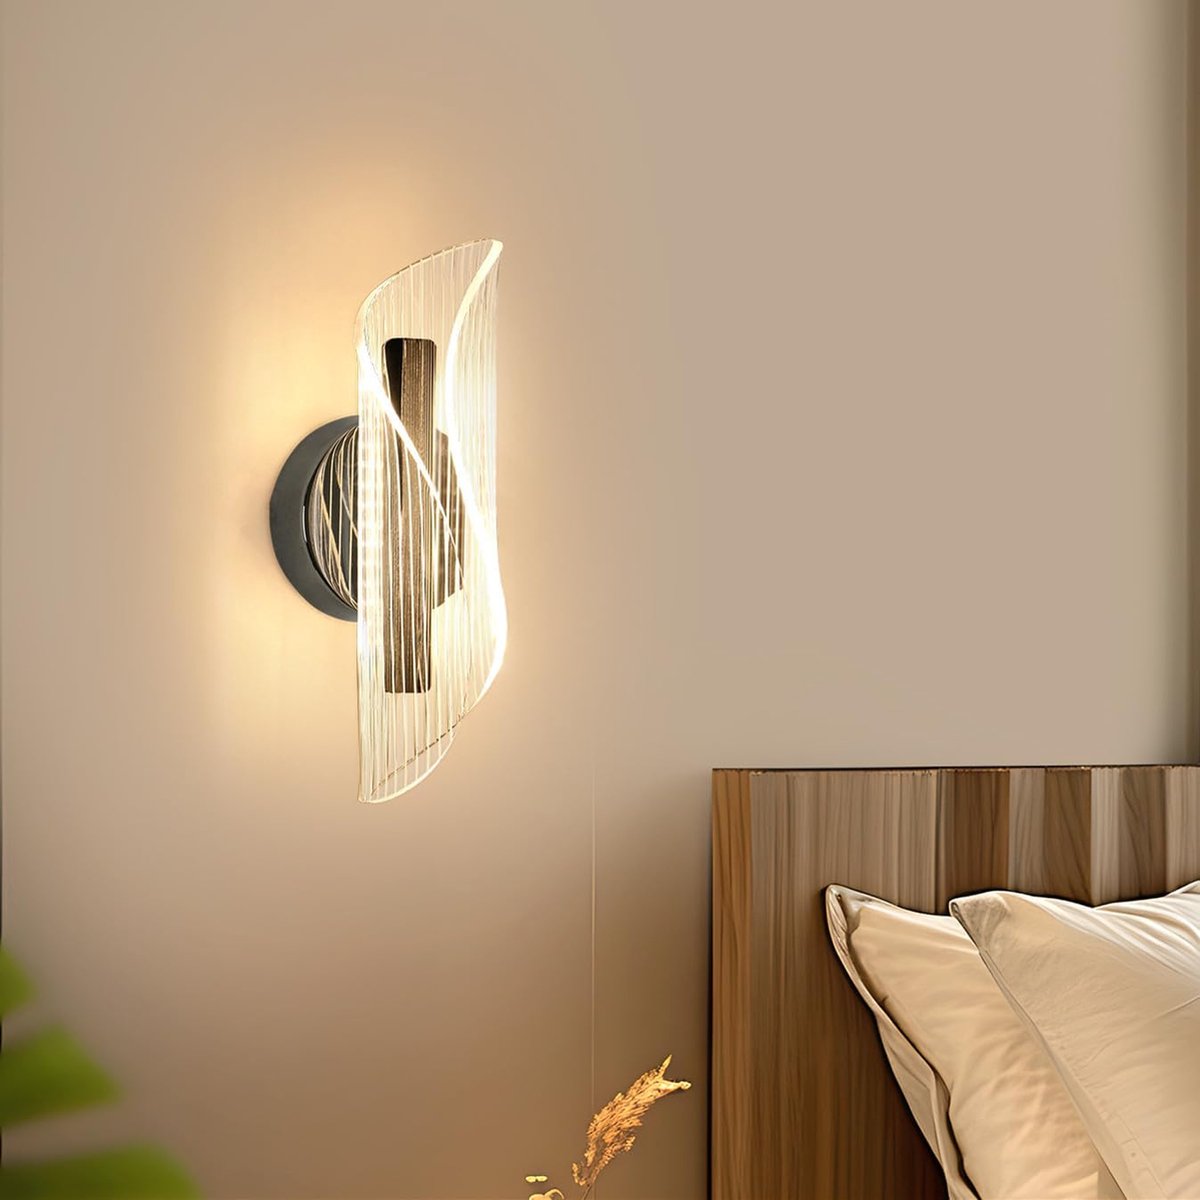 Goeco wandlamp - 21cm - Klein - LED - 12W - 3 kleurtemperaturen - 3000K/4500K/6500K - gebogen design wandlamp - voor slaapkamer woonkamer keuken hal trap